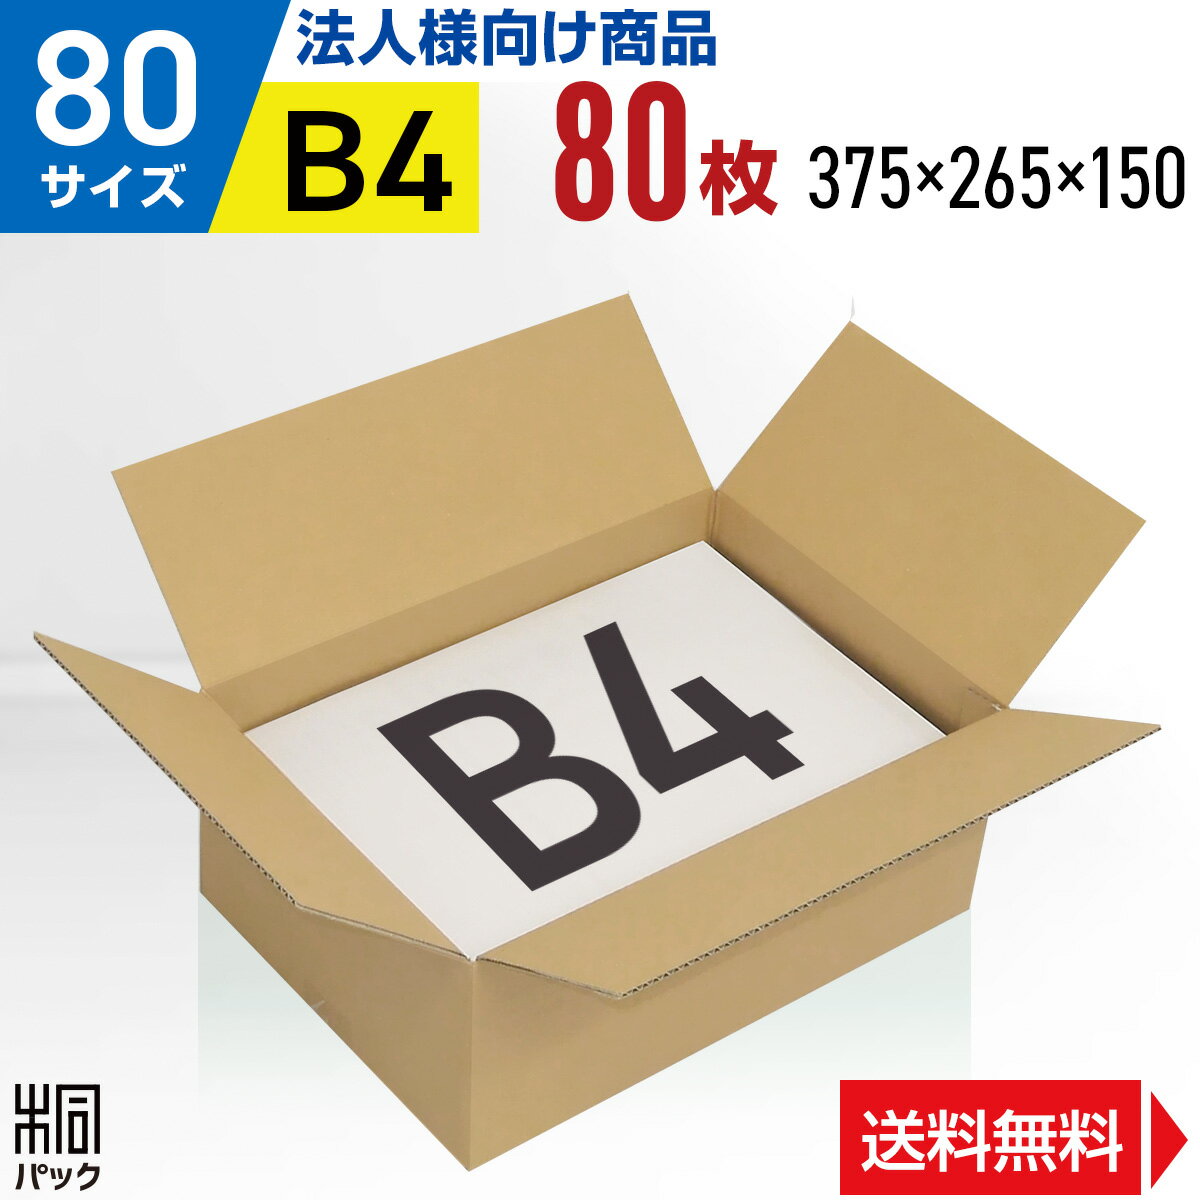 【法人特価】段ボール 箱 80サイズ B